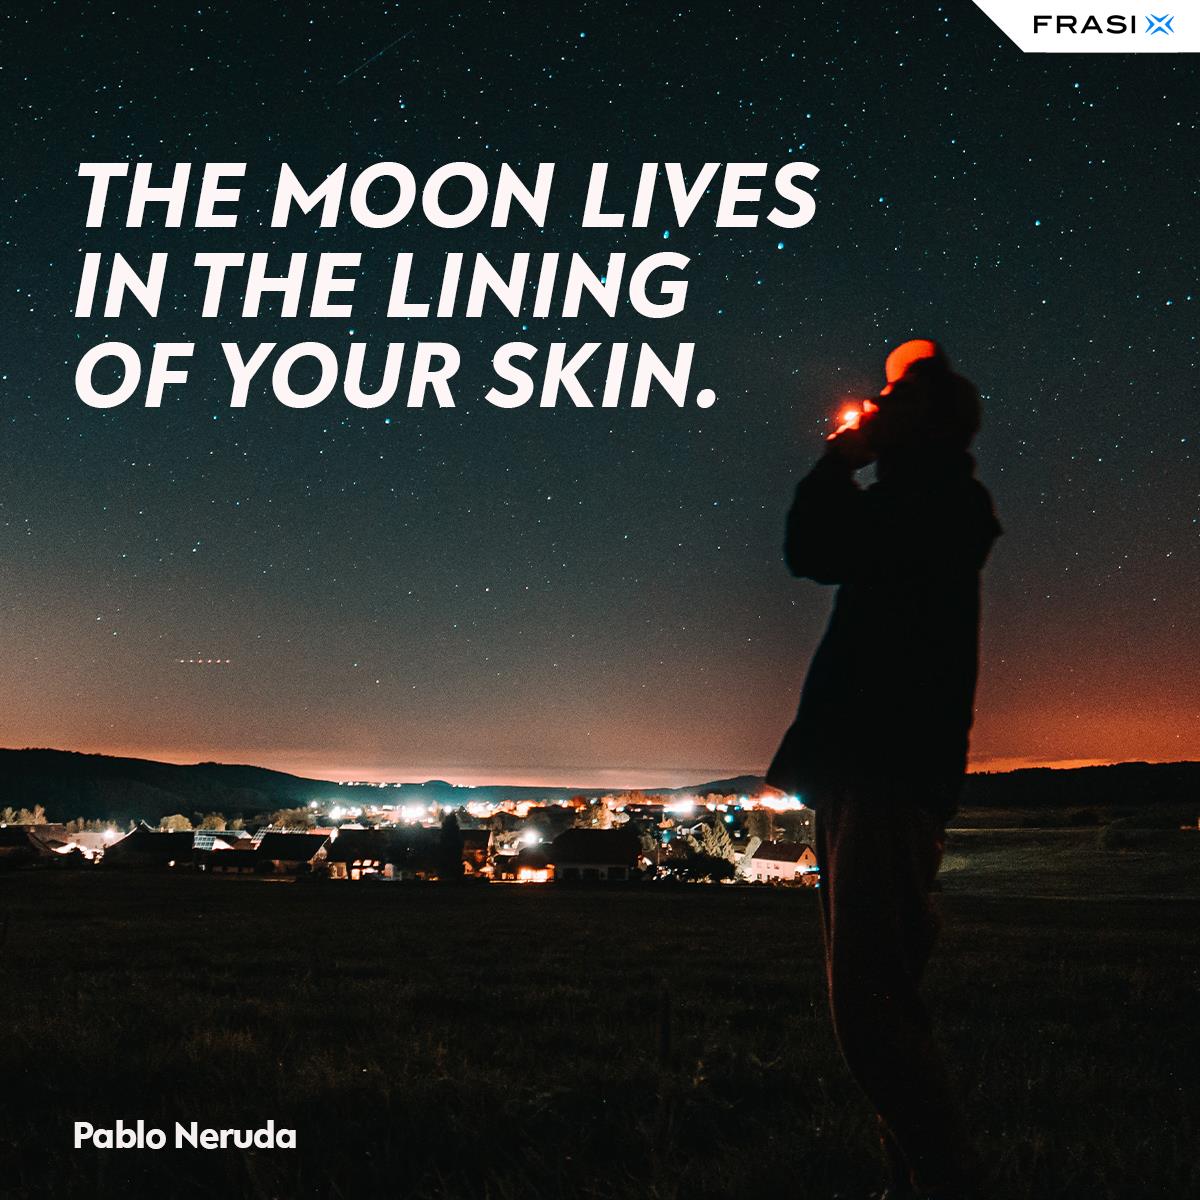 Frasi sulla luna in inglese di Pablo Neruda